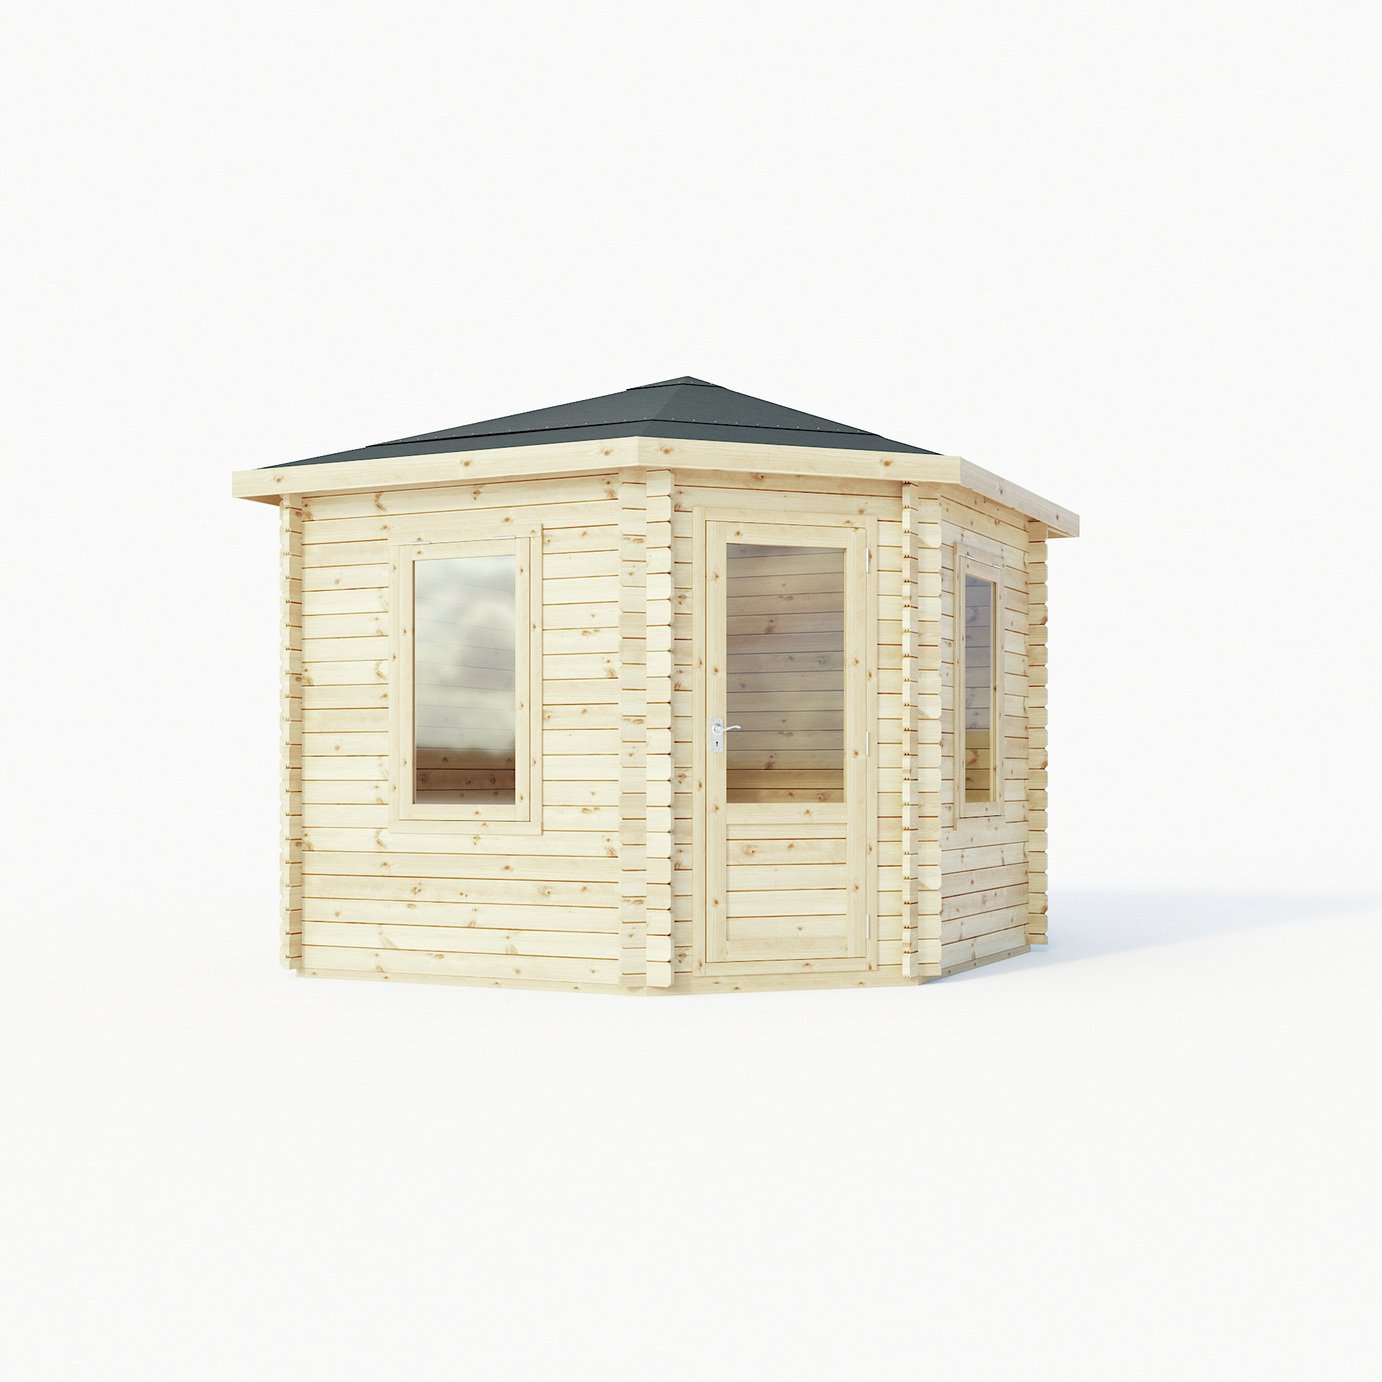 Mercia Wooden 15 x 12ft Single Glazed Corner Log Cabin